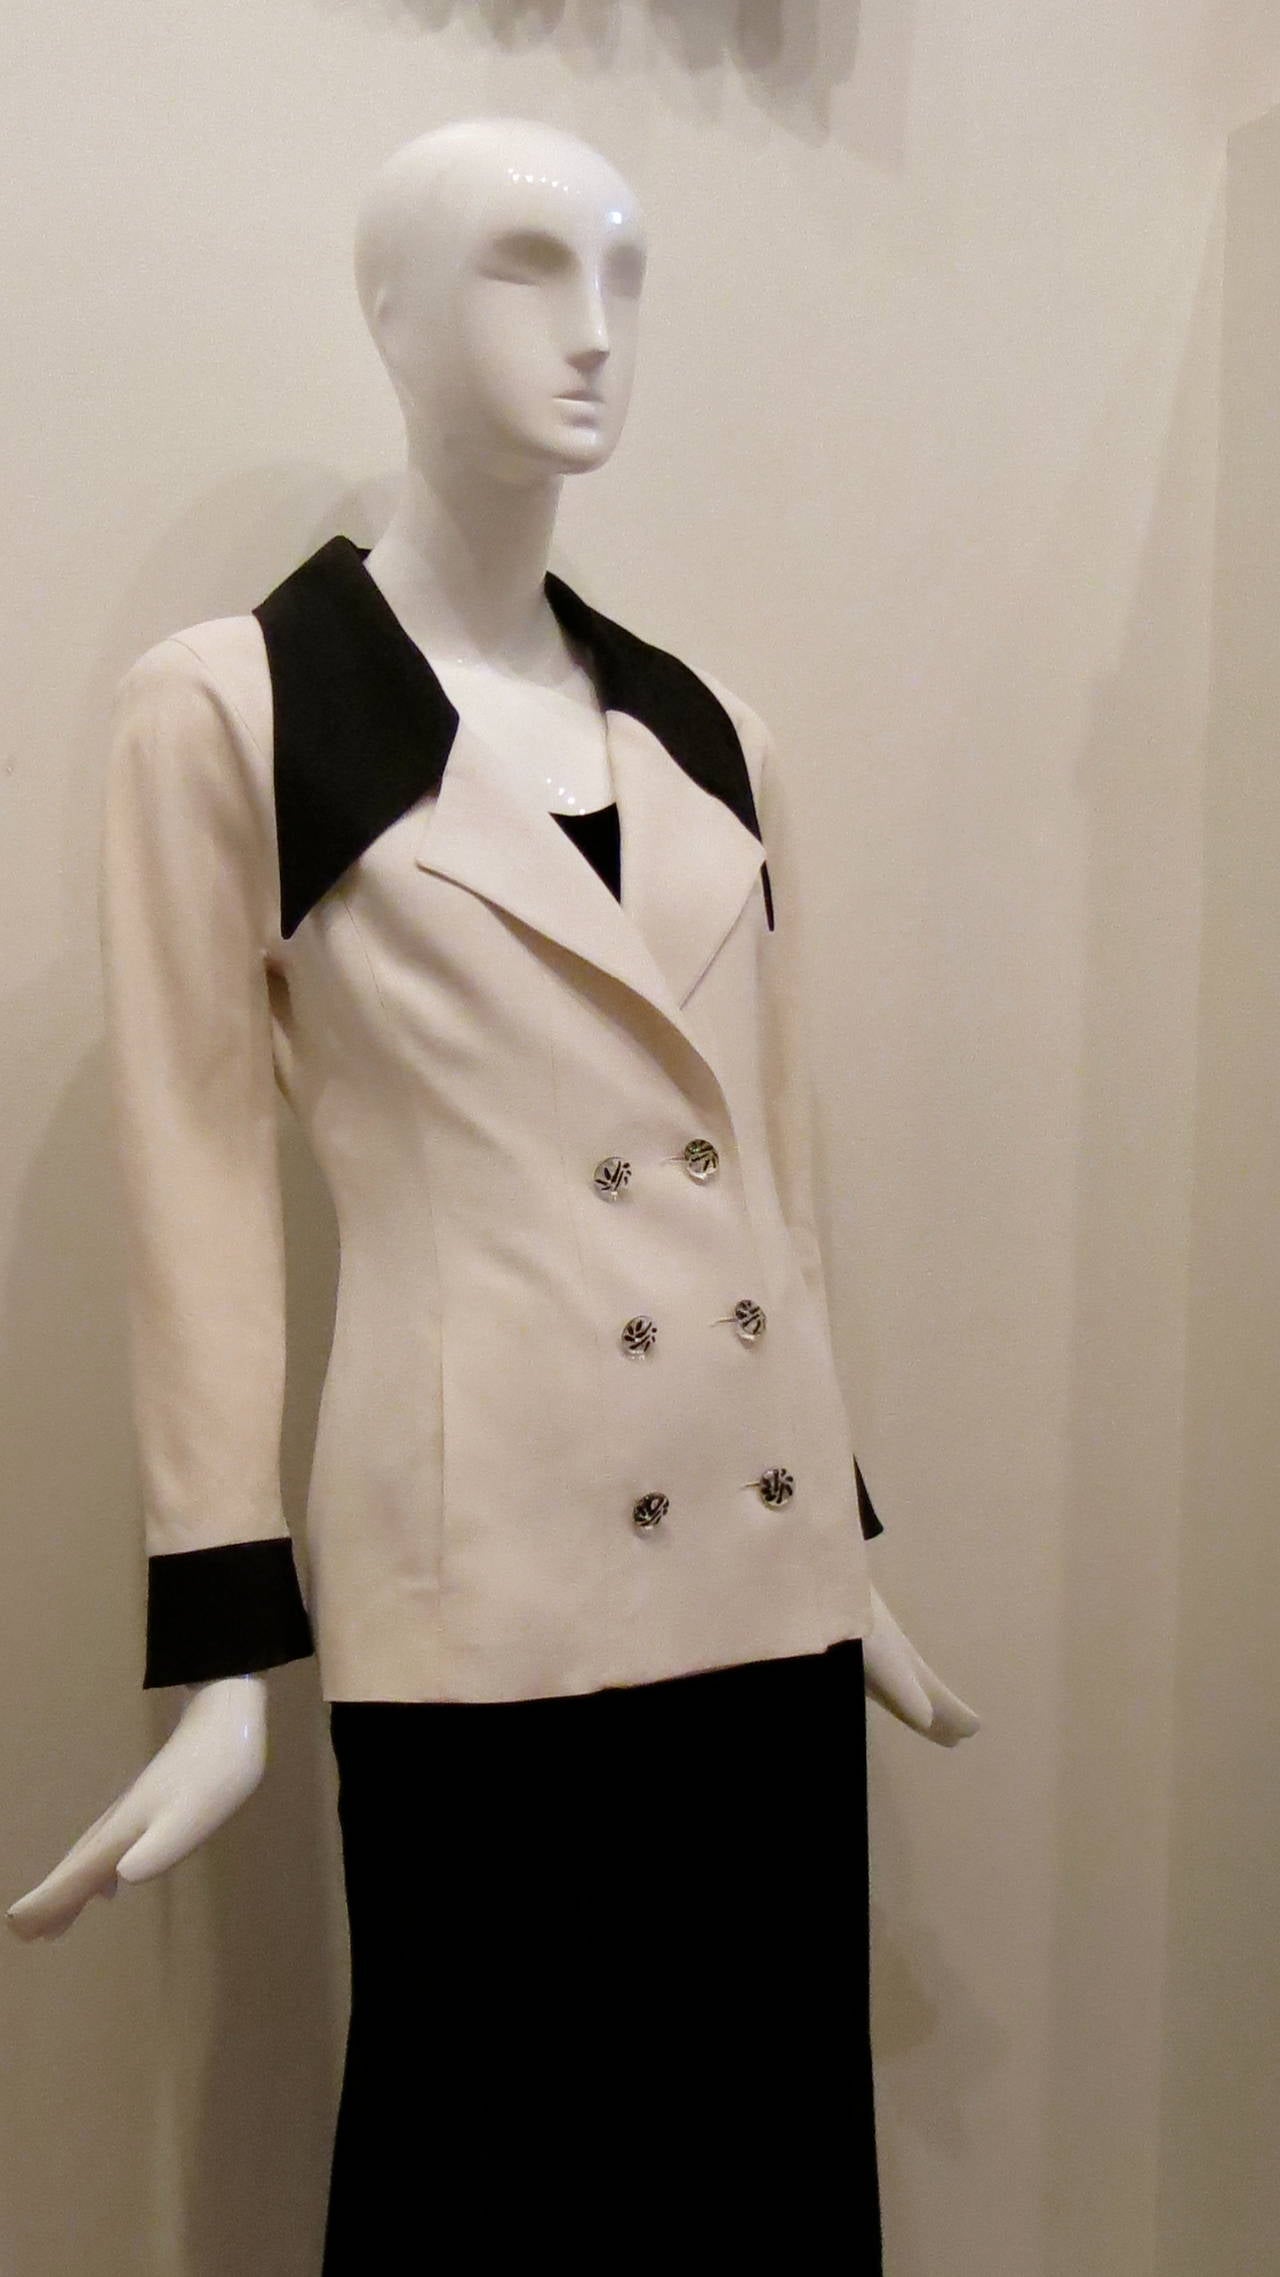 Beige Karl Lagerfeld Off White Blazer With Black Collar And Cuffs